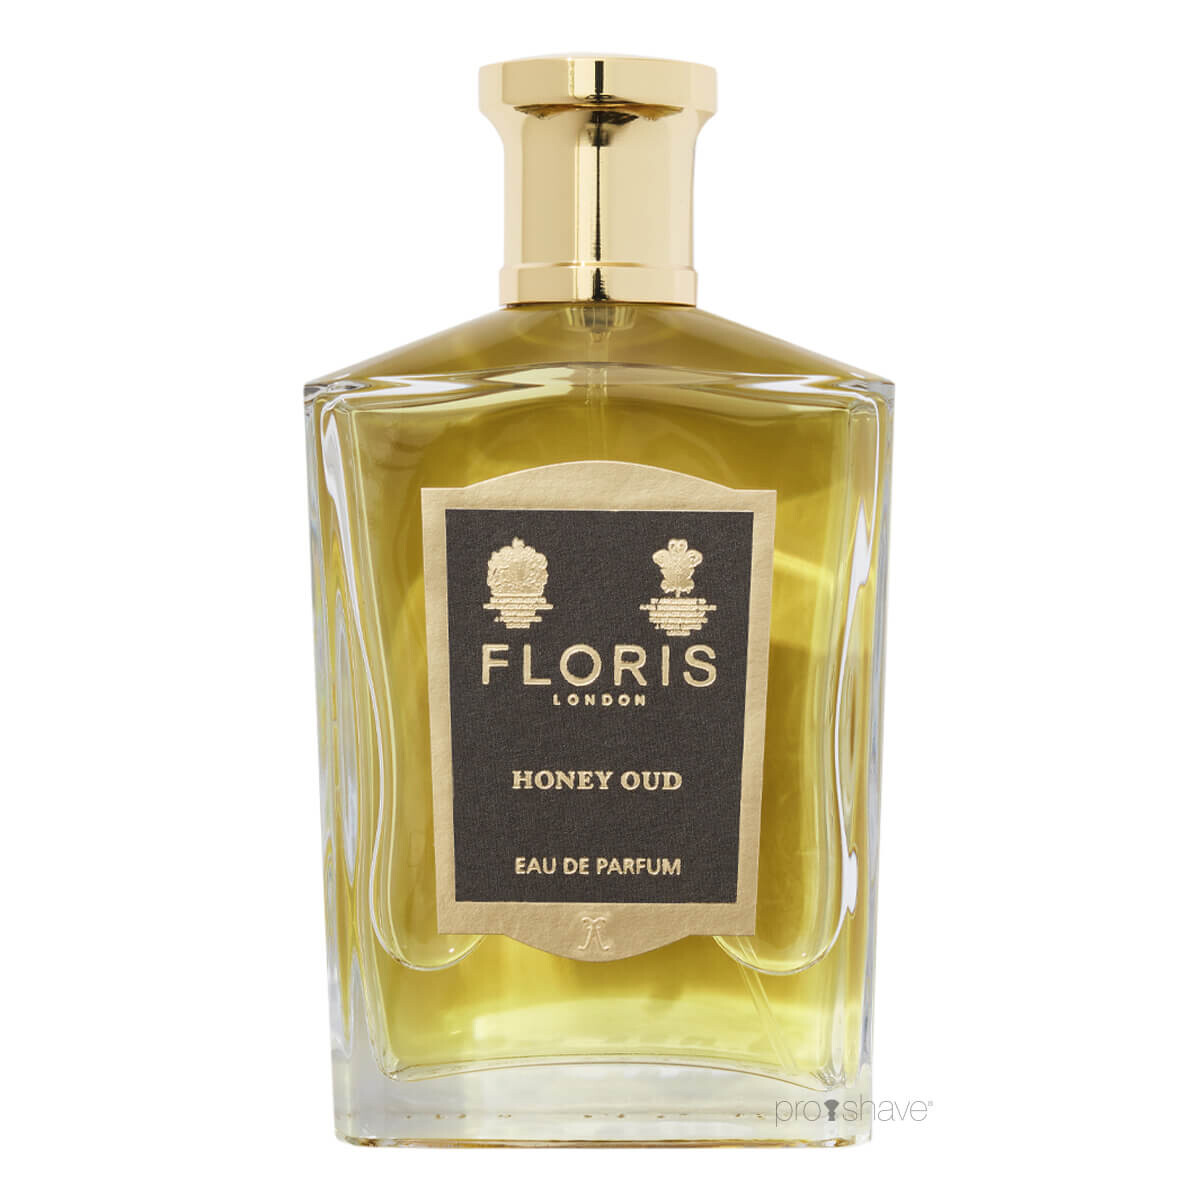 Se Floris Honey Oud, Eau de Parfum, 100 ml. hos Proshave